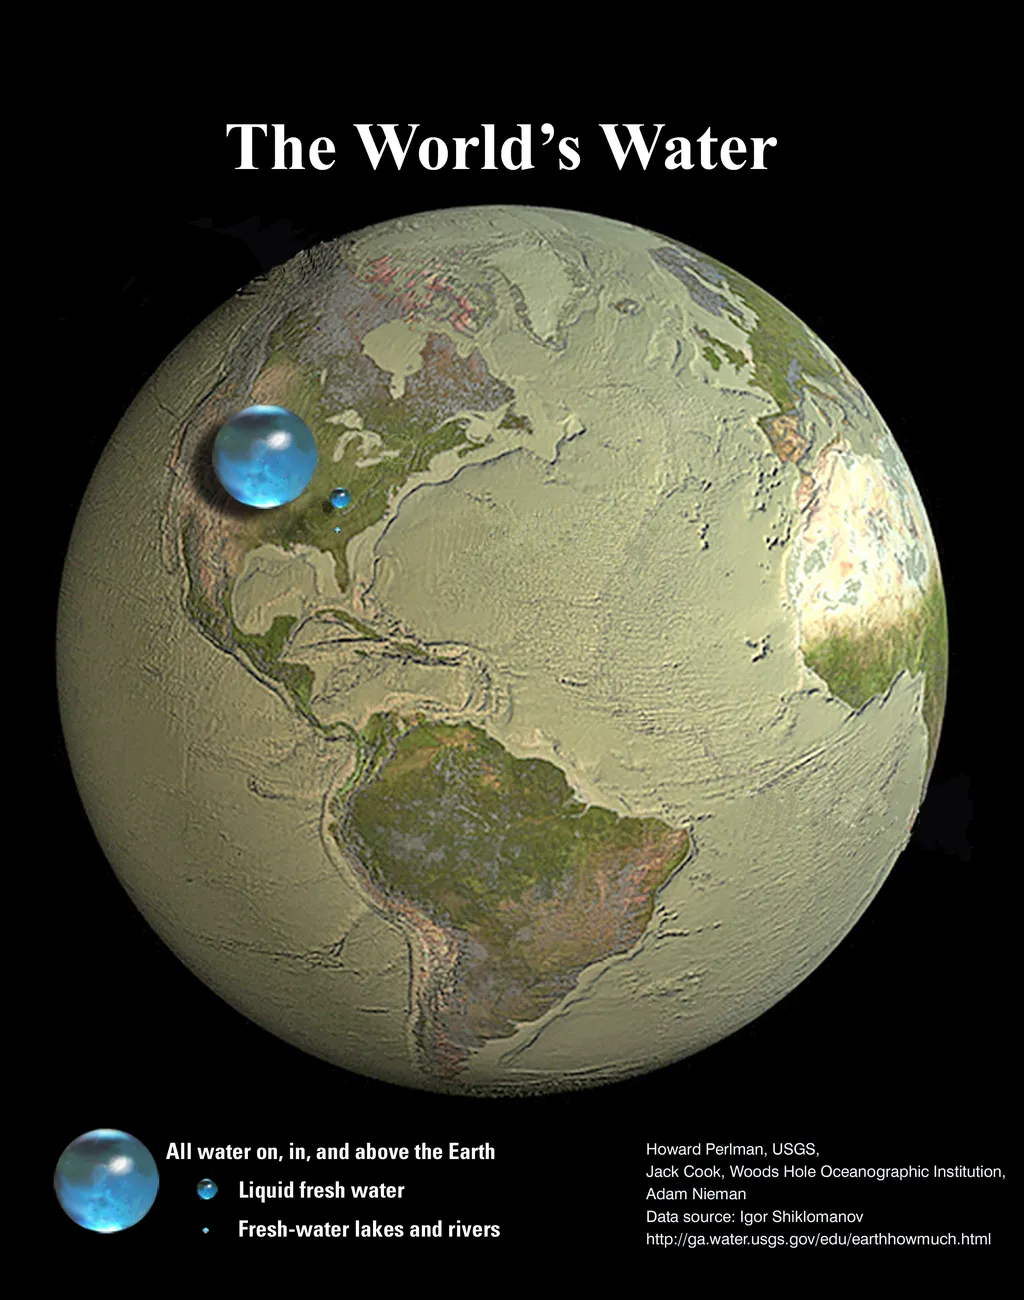 Reservas de água na Terra representadas por esferas (Imagem: Reprodução/Jack Cook, Adam Nieman, Woods Hole Oceanographic Institution; Data source: Igor Shiklomanov)